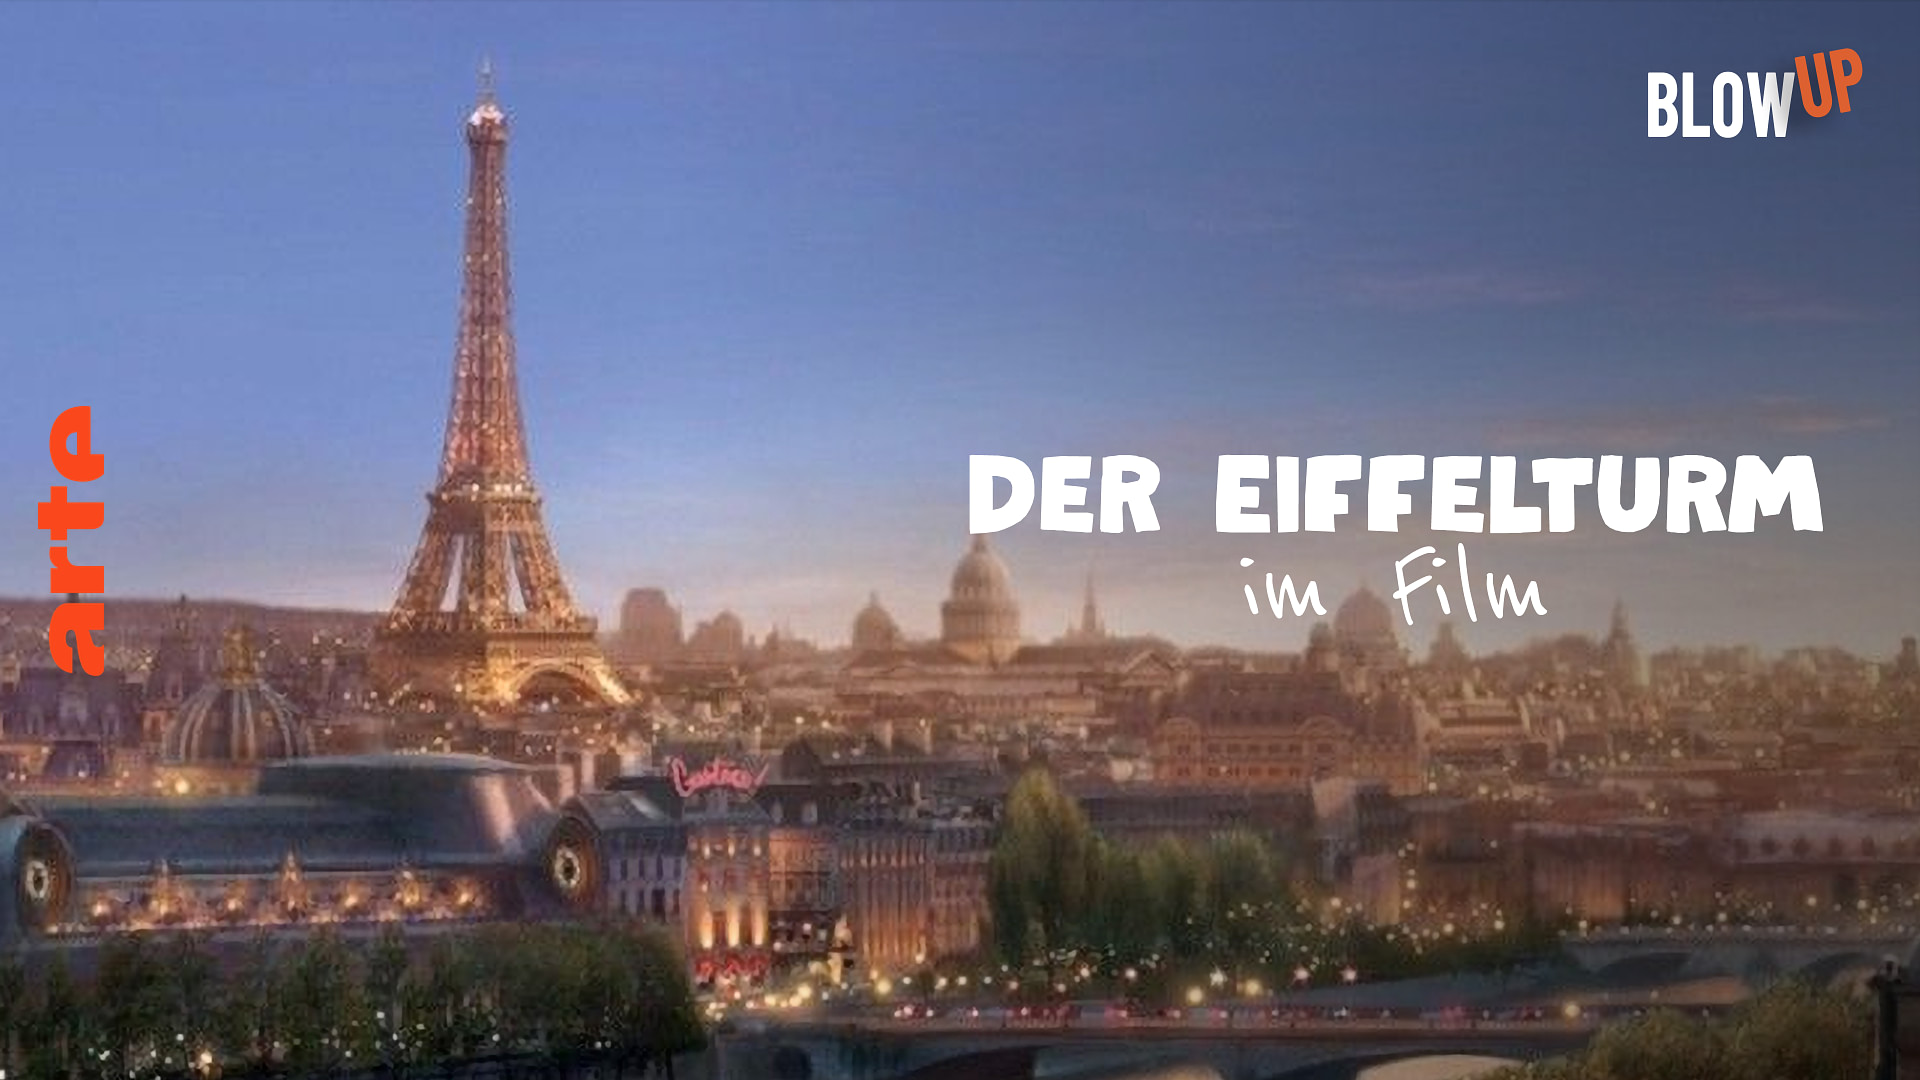 Blow up - Der Eiffelturm im Film